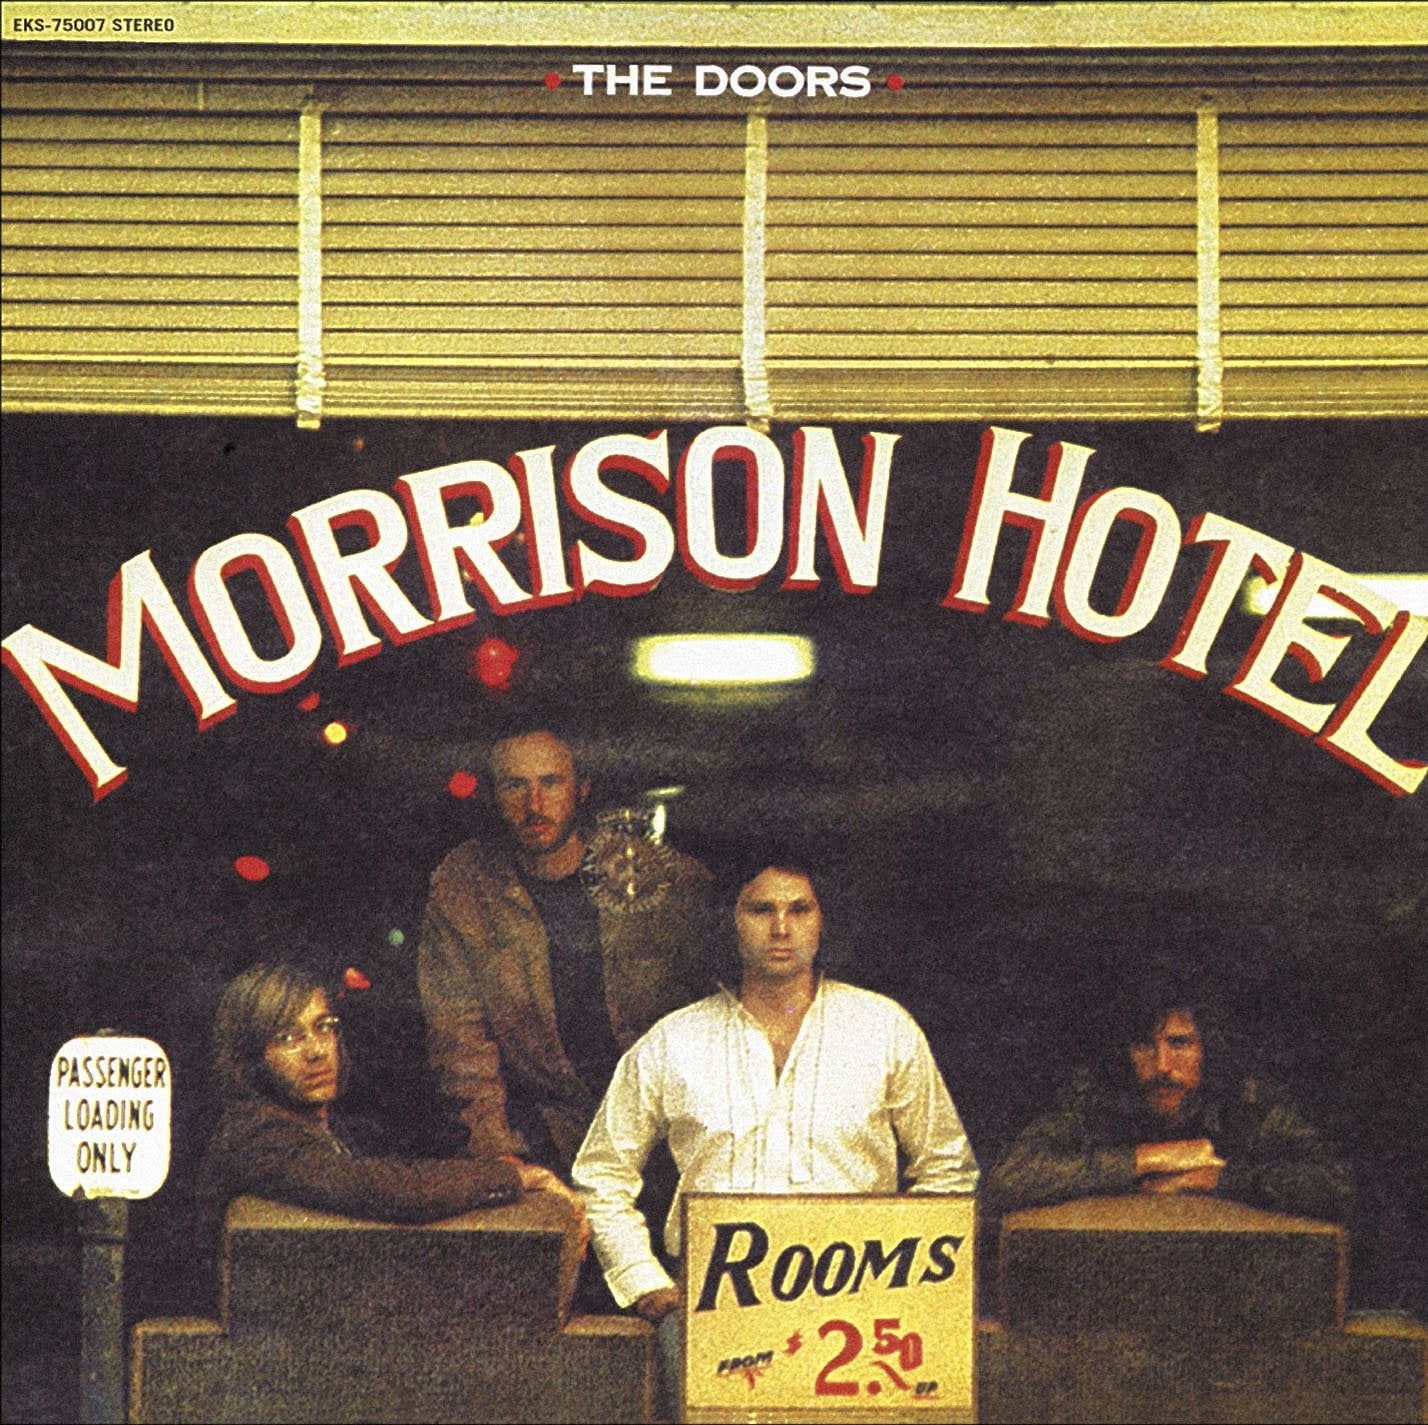 THE DOORS - MORRISON HOTEL - VINYL LP